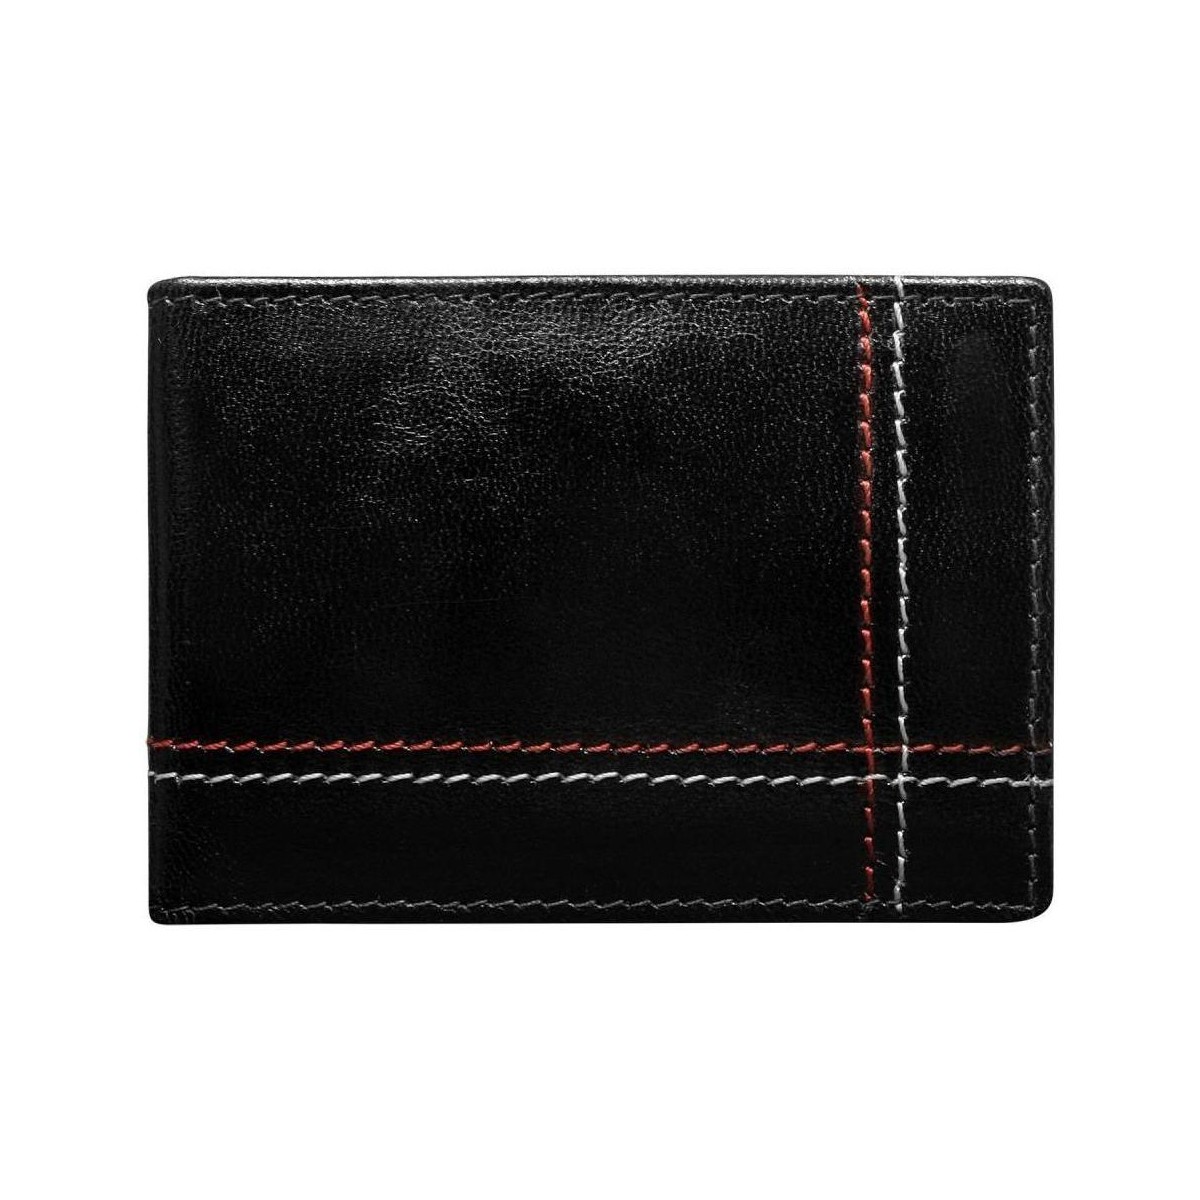 Taška Muži Náprsní tašky Wild Kožená černá menší pánská peněženka RFID v krabičce ALWAYS Černá